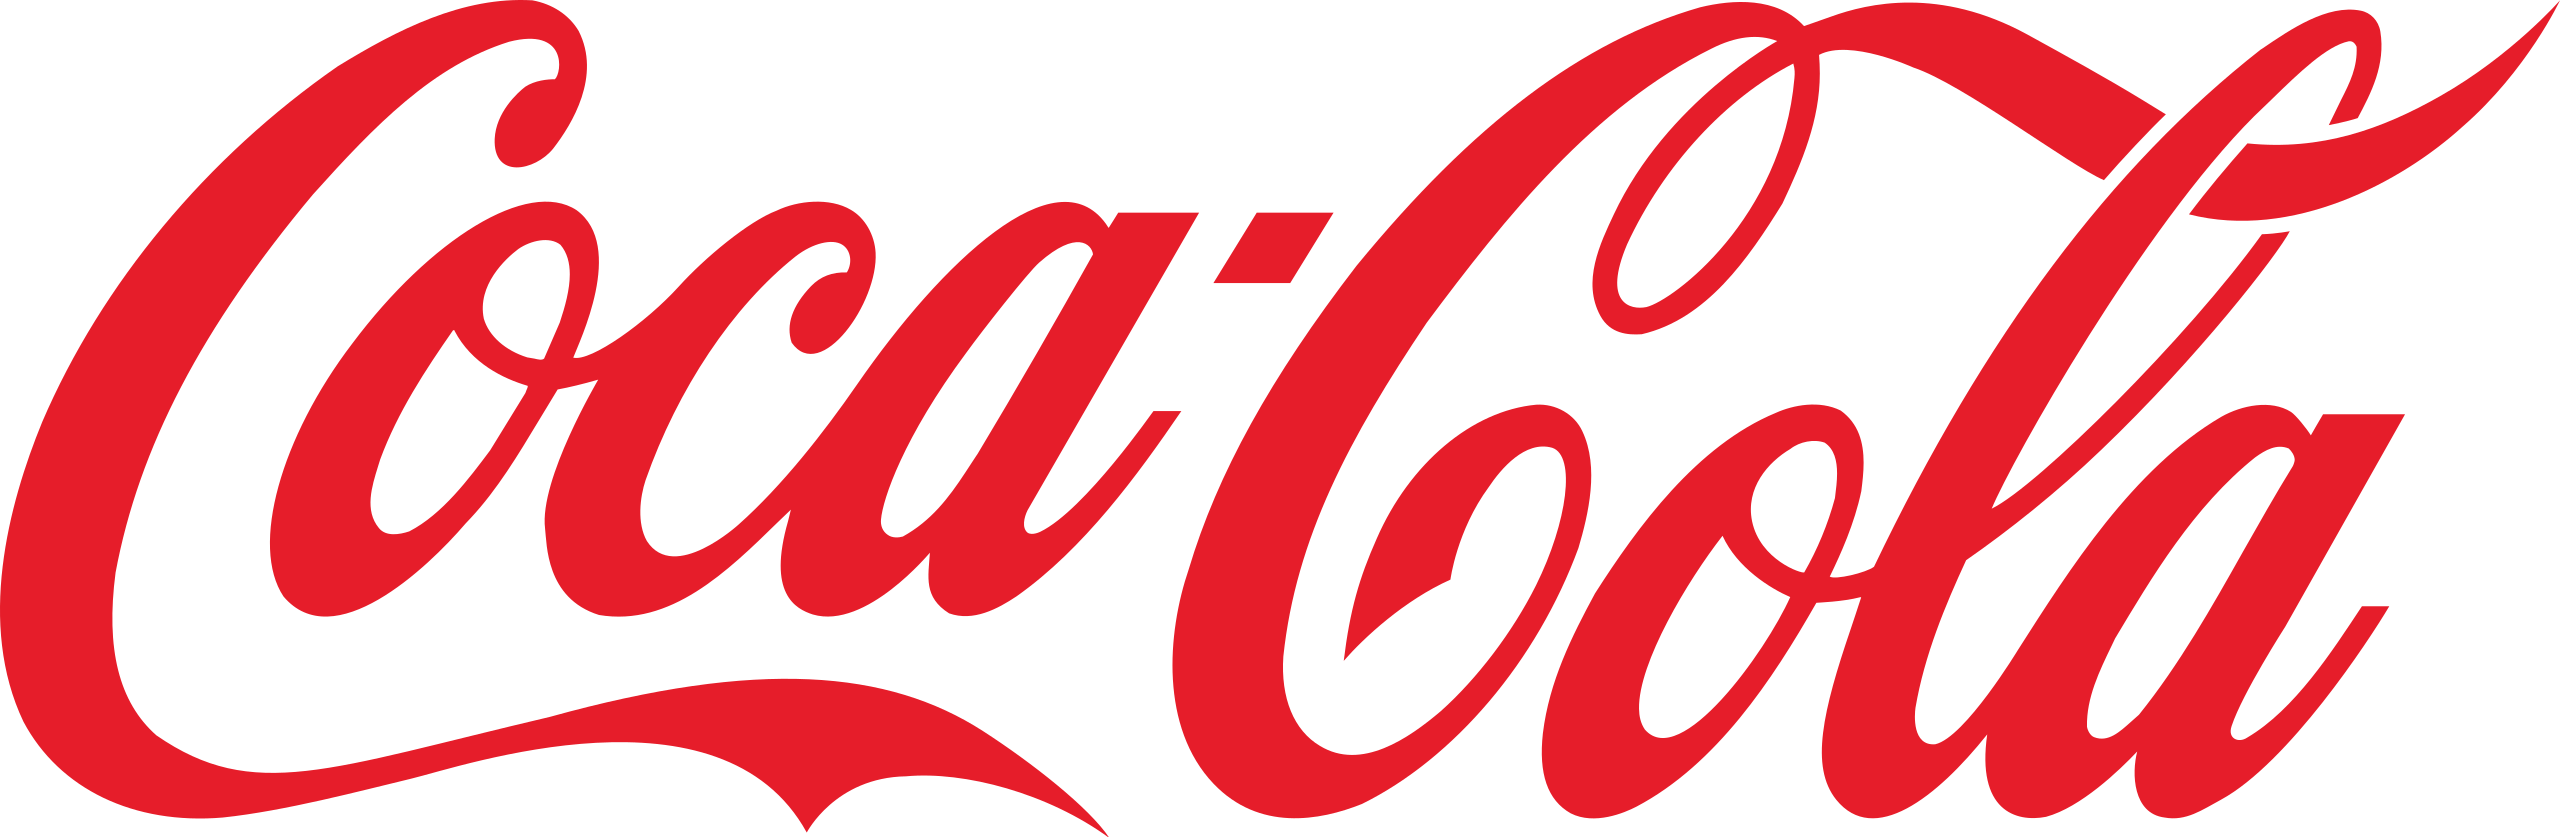 Coca-Cola in script